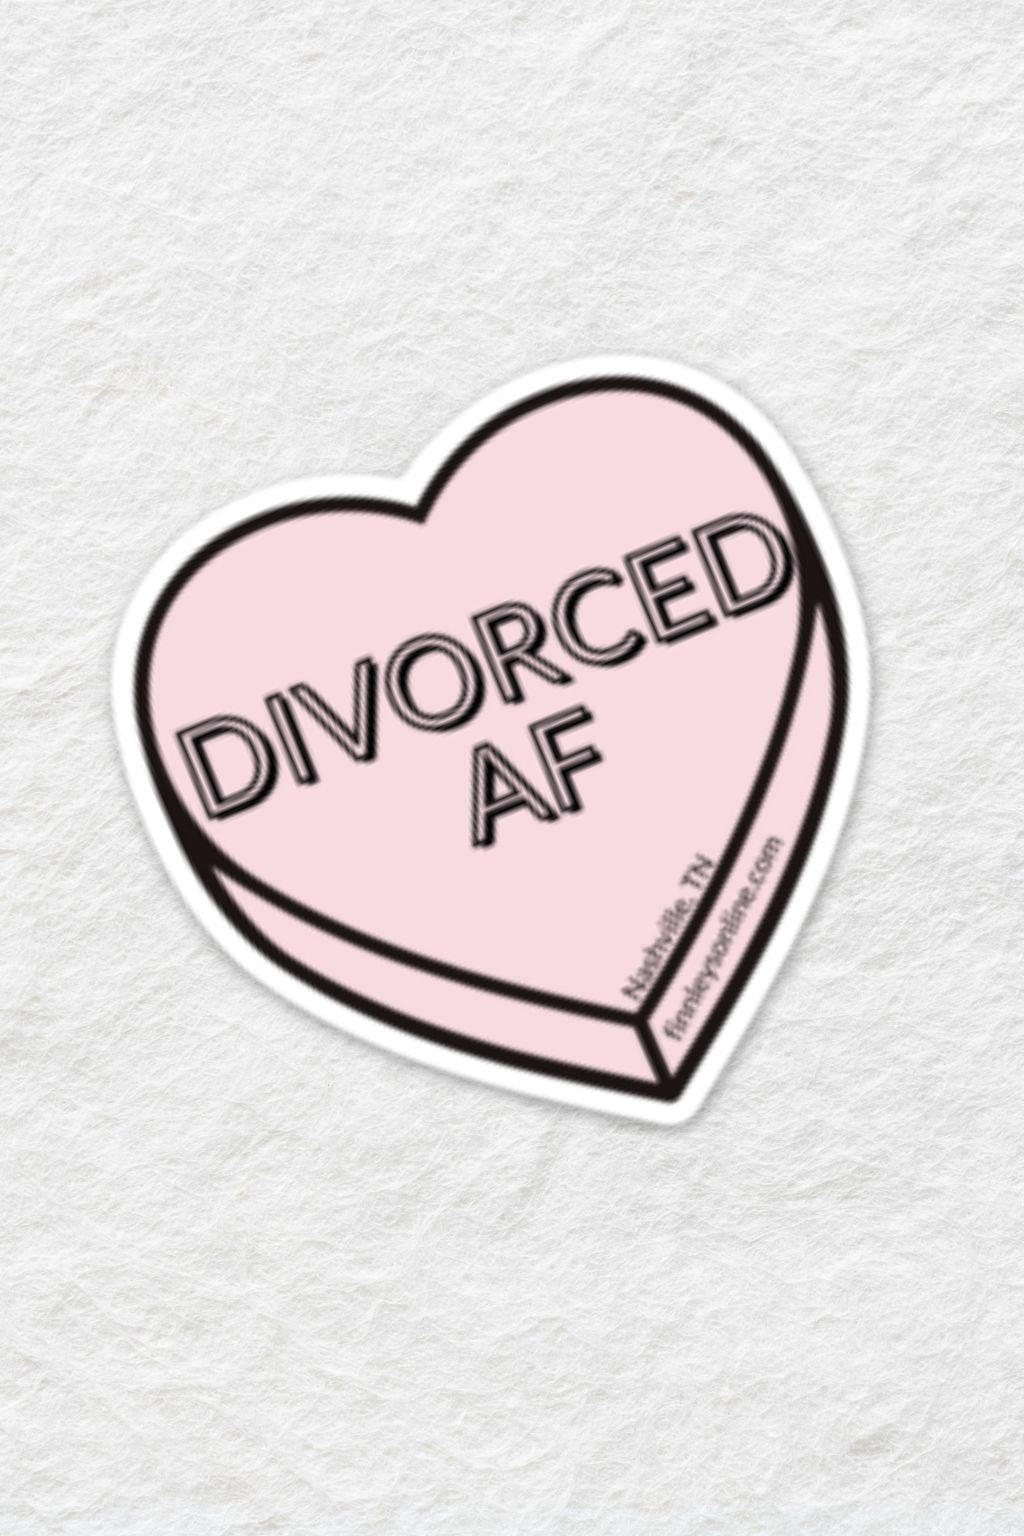 Divorced AF Sticker